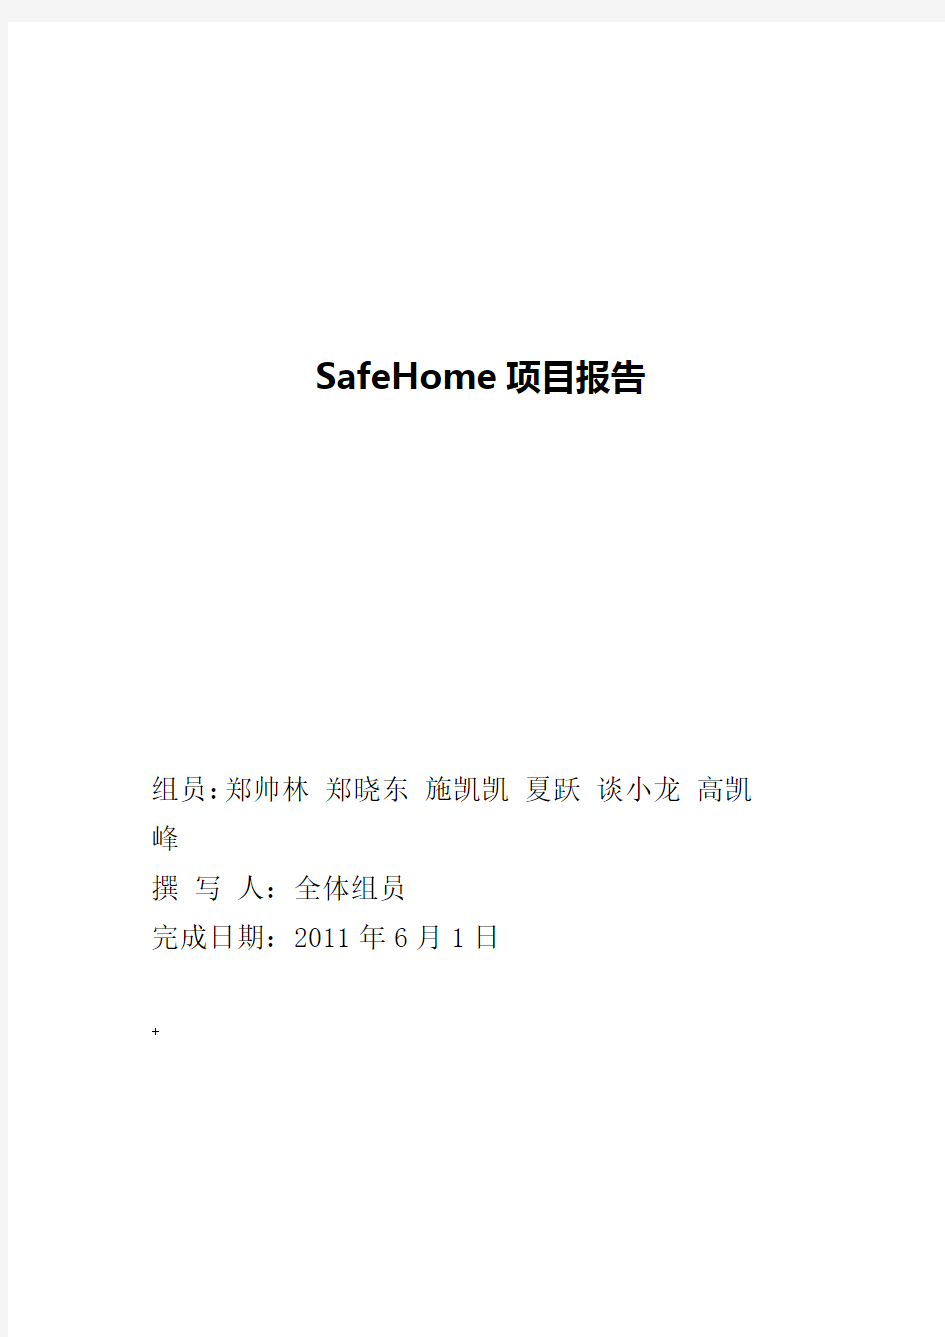 软件工程课程设计报告-SafeHome项目报告